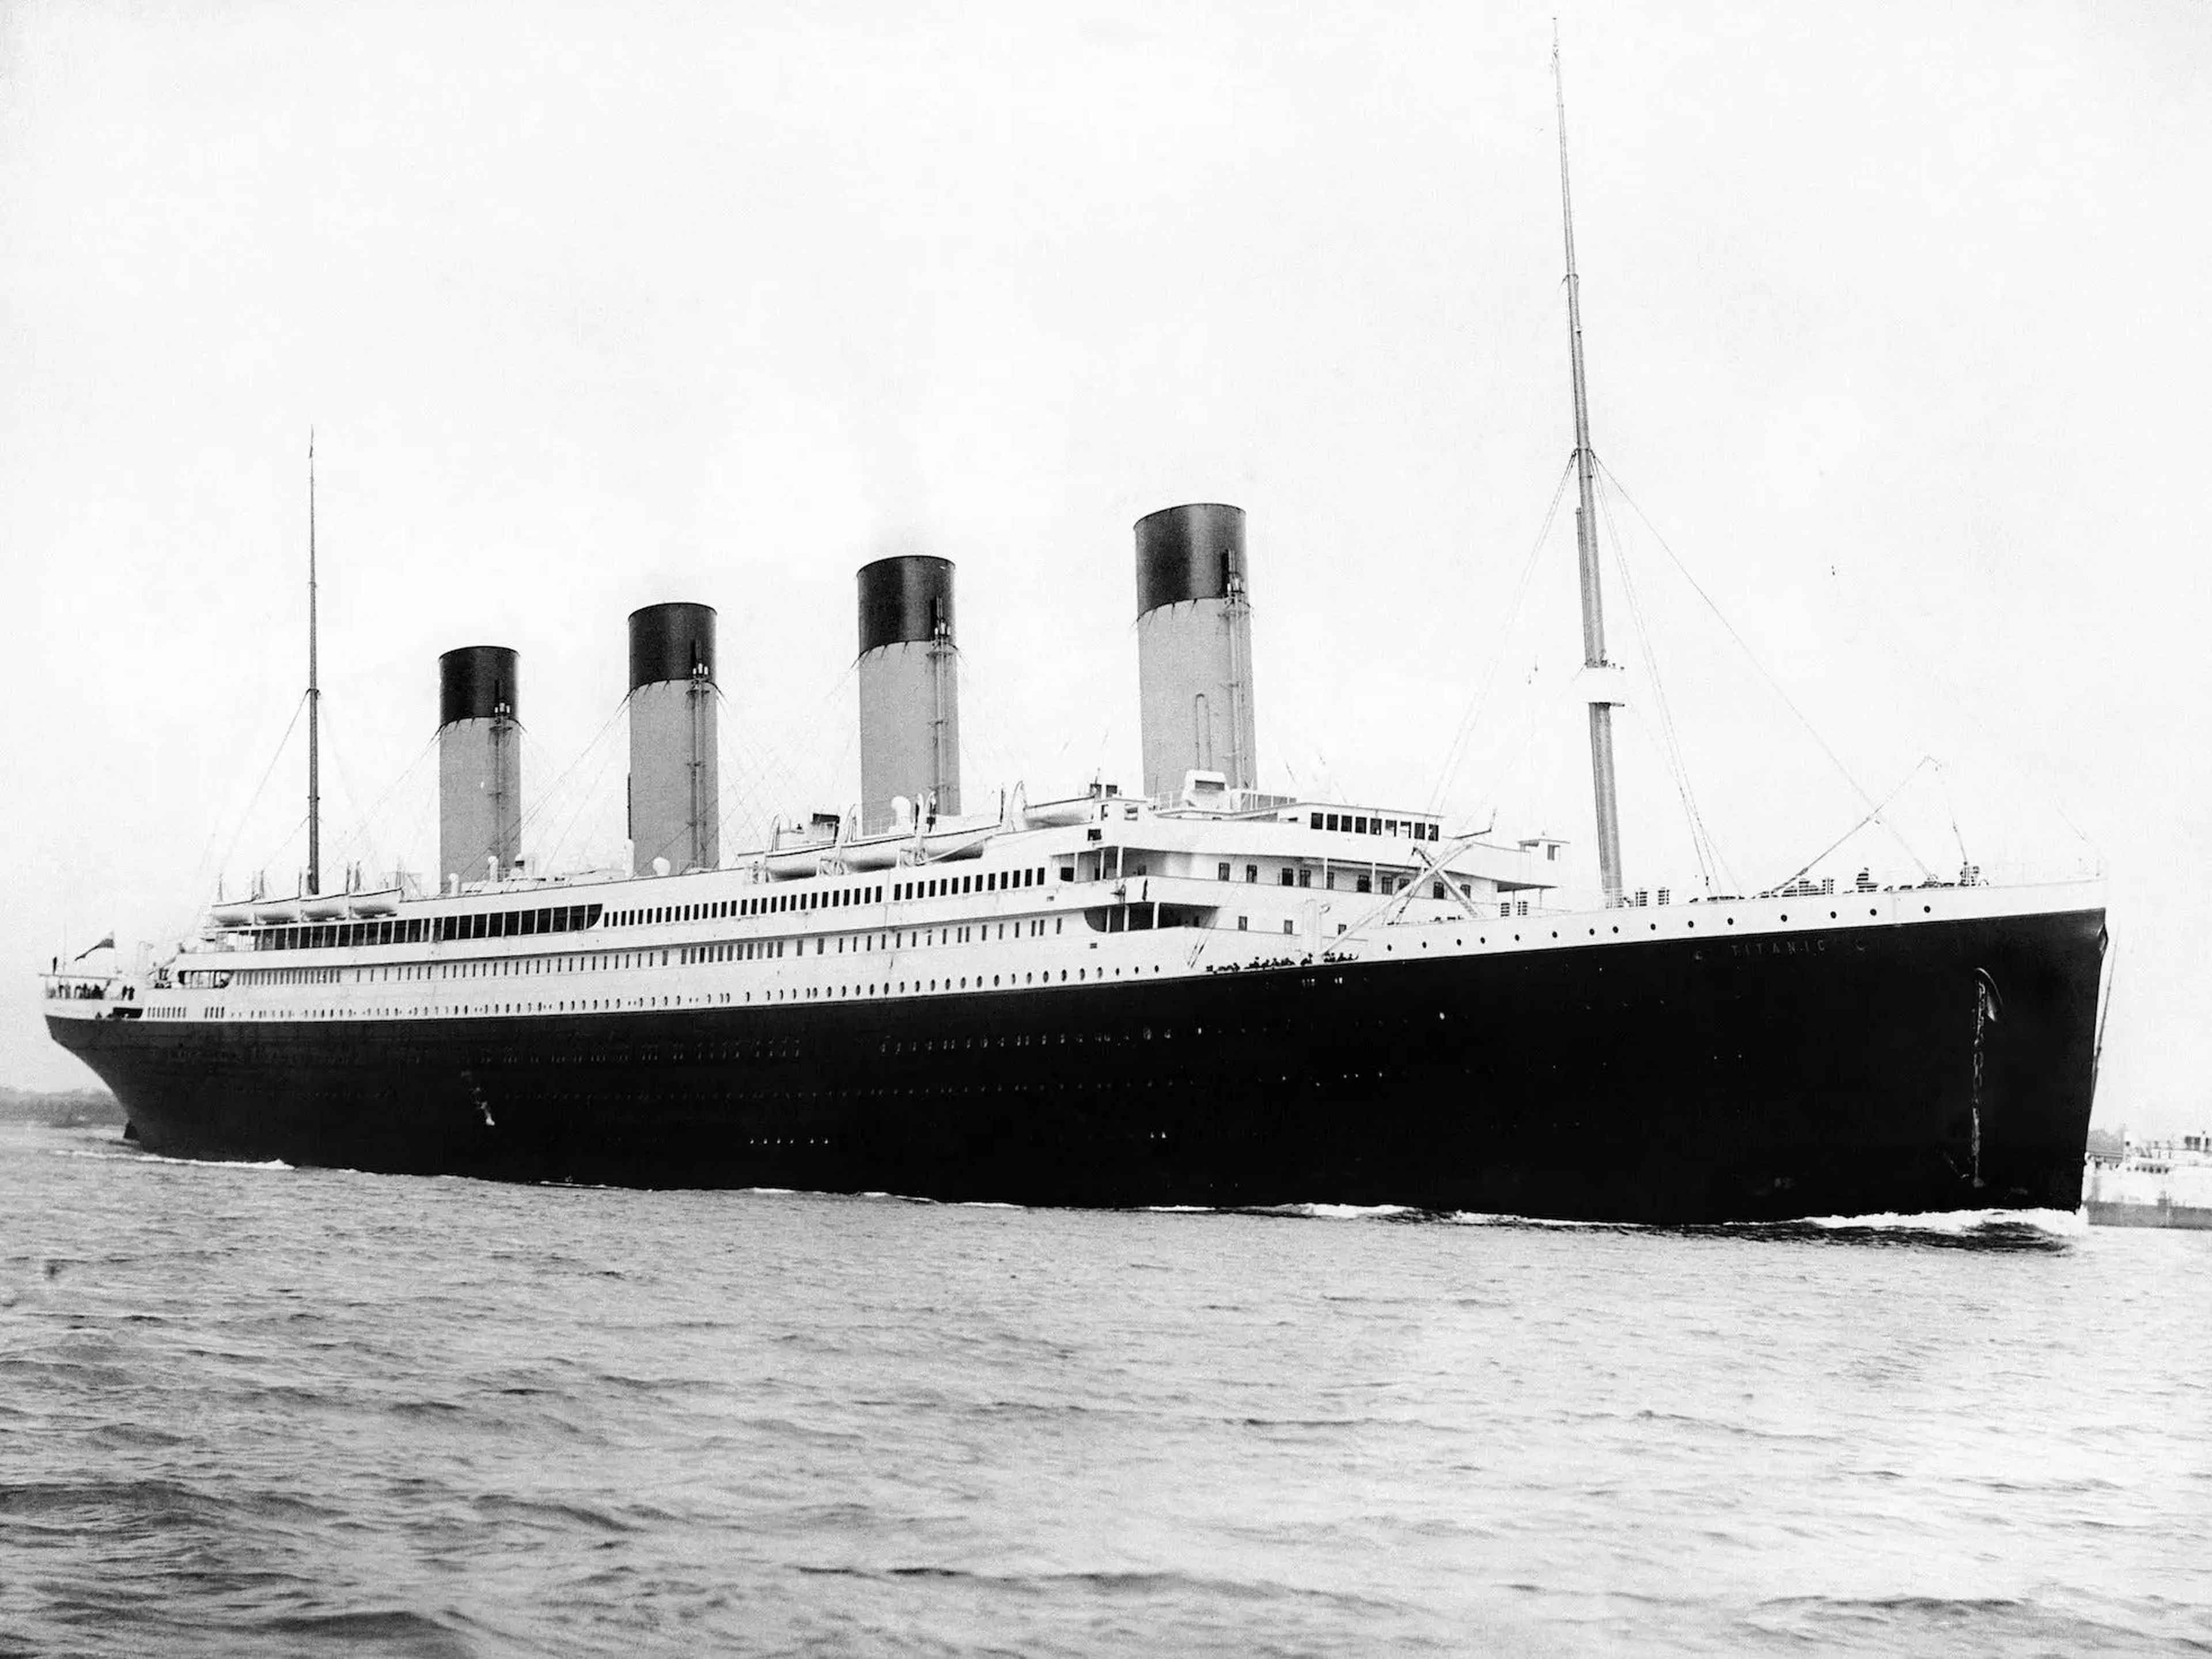 Vista de perfil del Titanic.